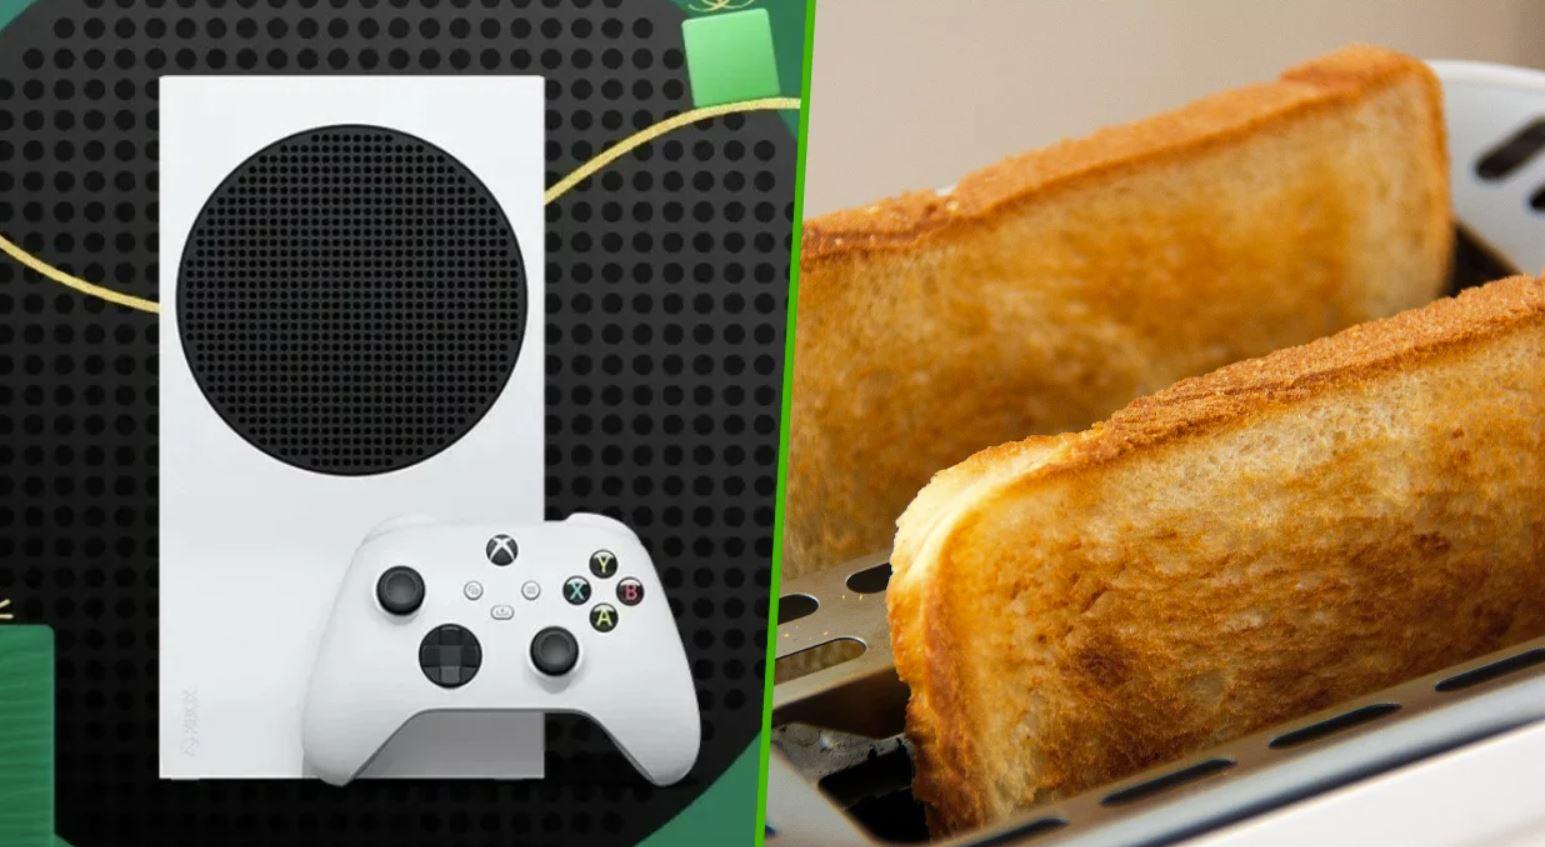 Xbox Series S toaster rumor محمصة خبز اكسبوكس سيريس اس عرب جيمرز